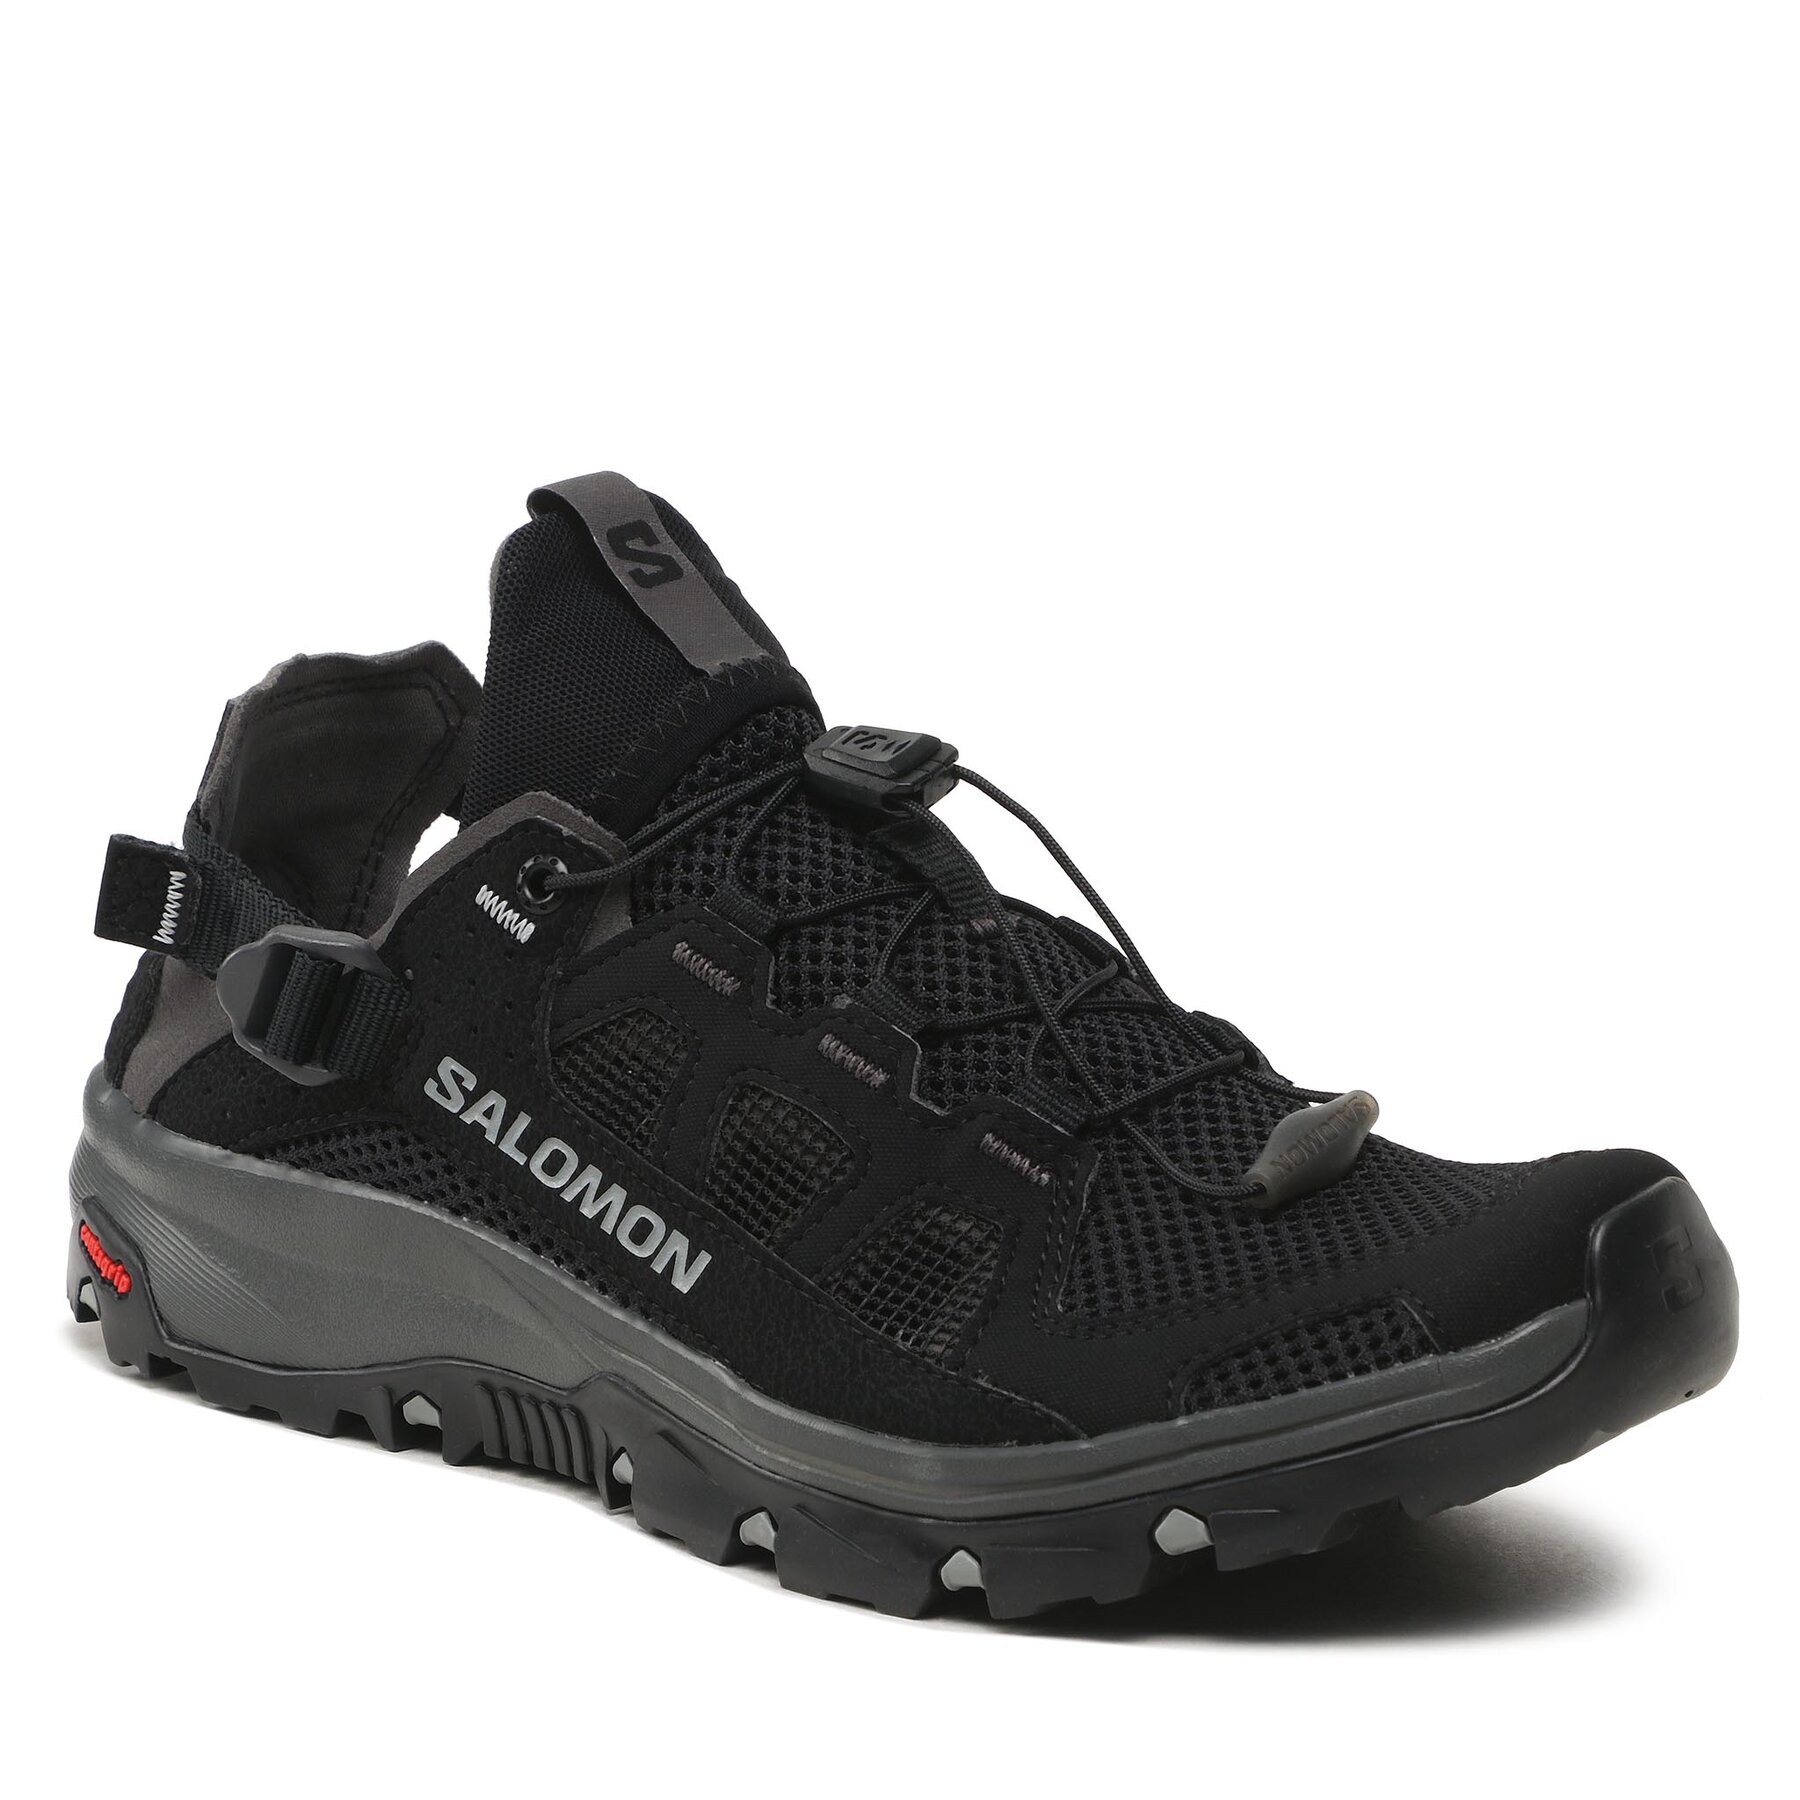 Pantofi Salomon Techamphibian 5 L47115100 Black/Magnet/Monument apă imagine noua